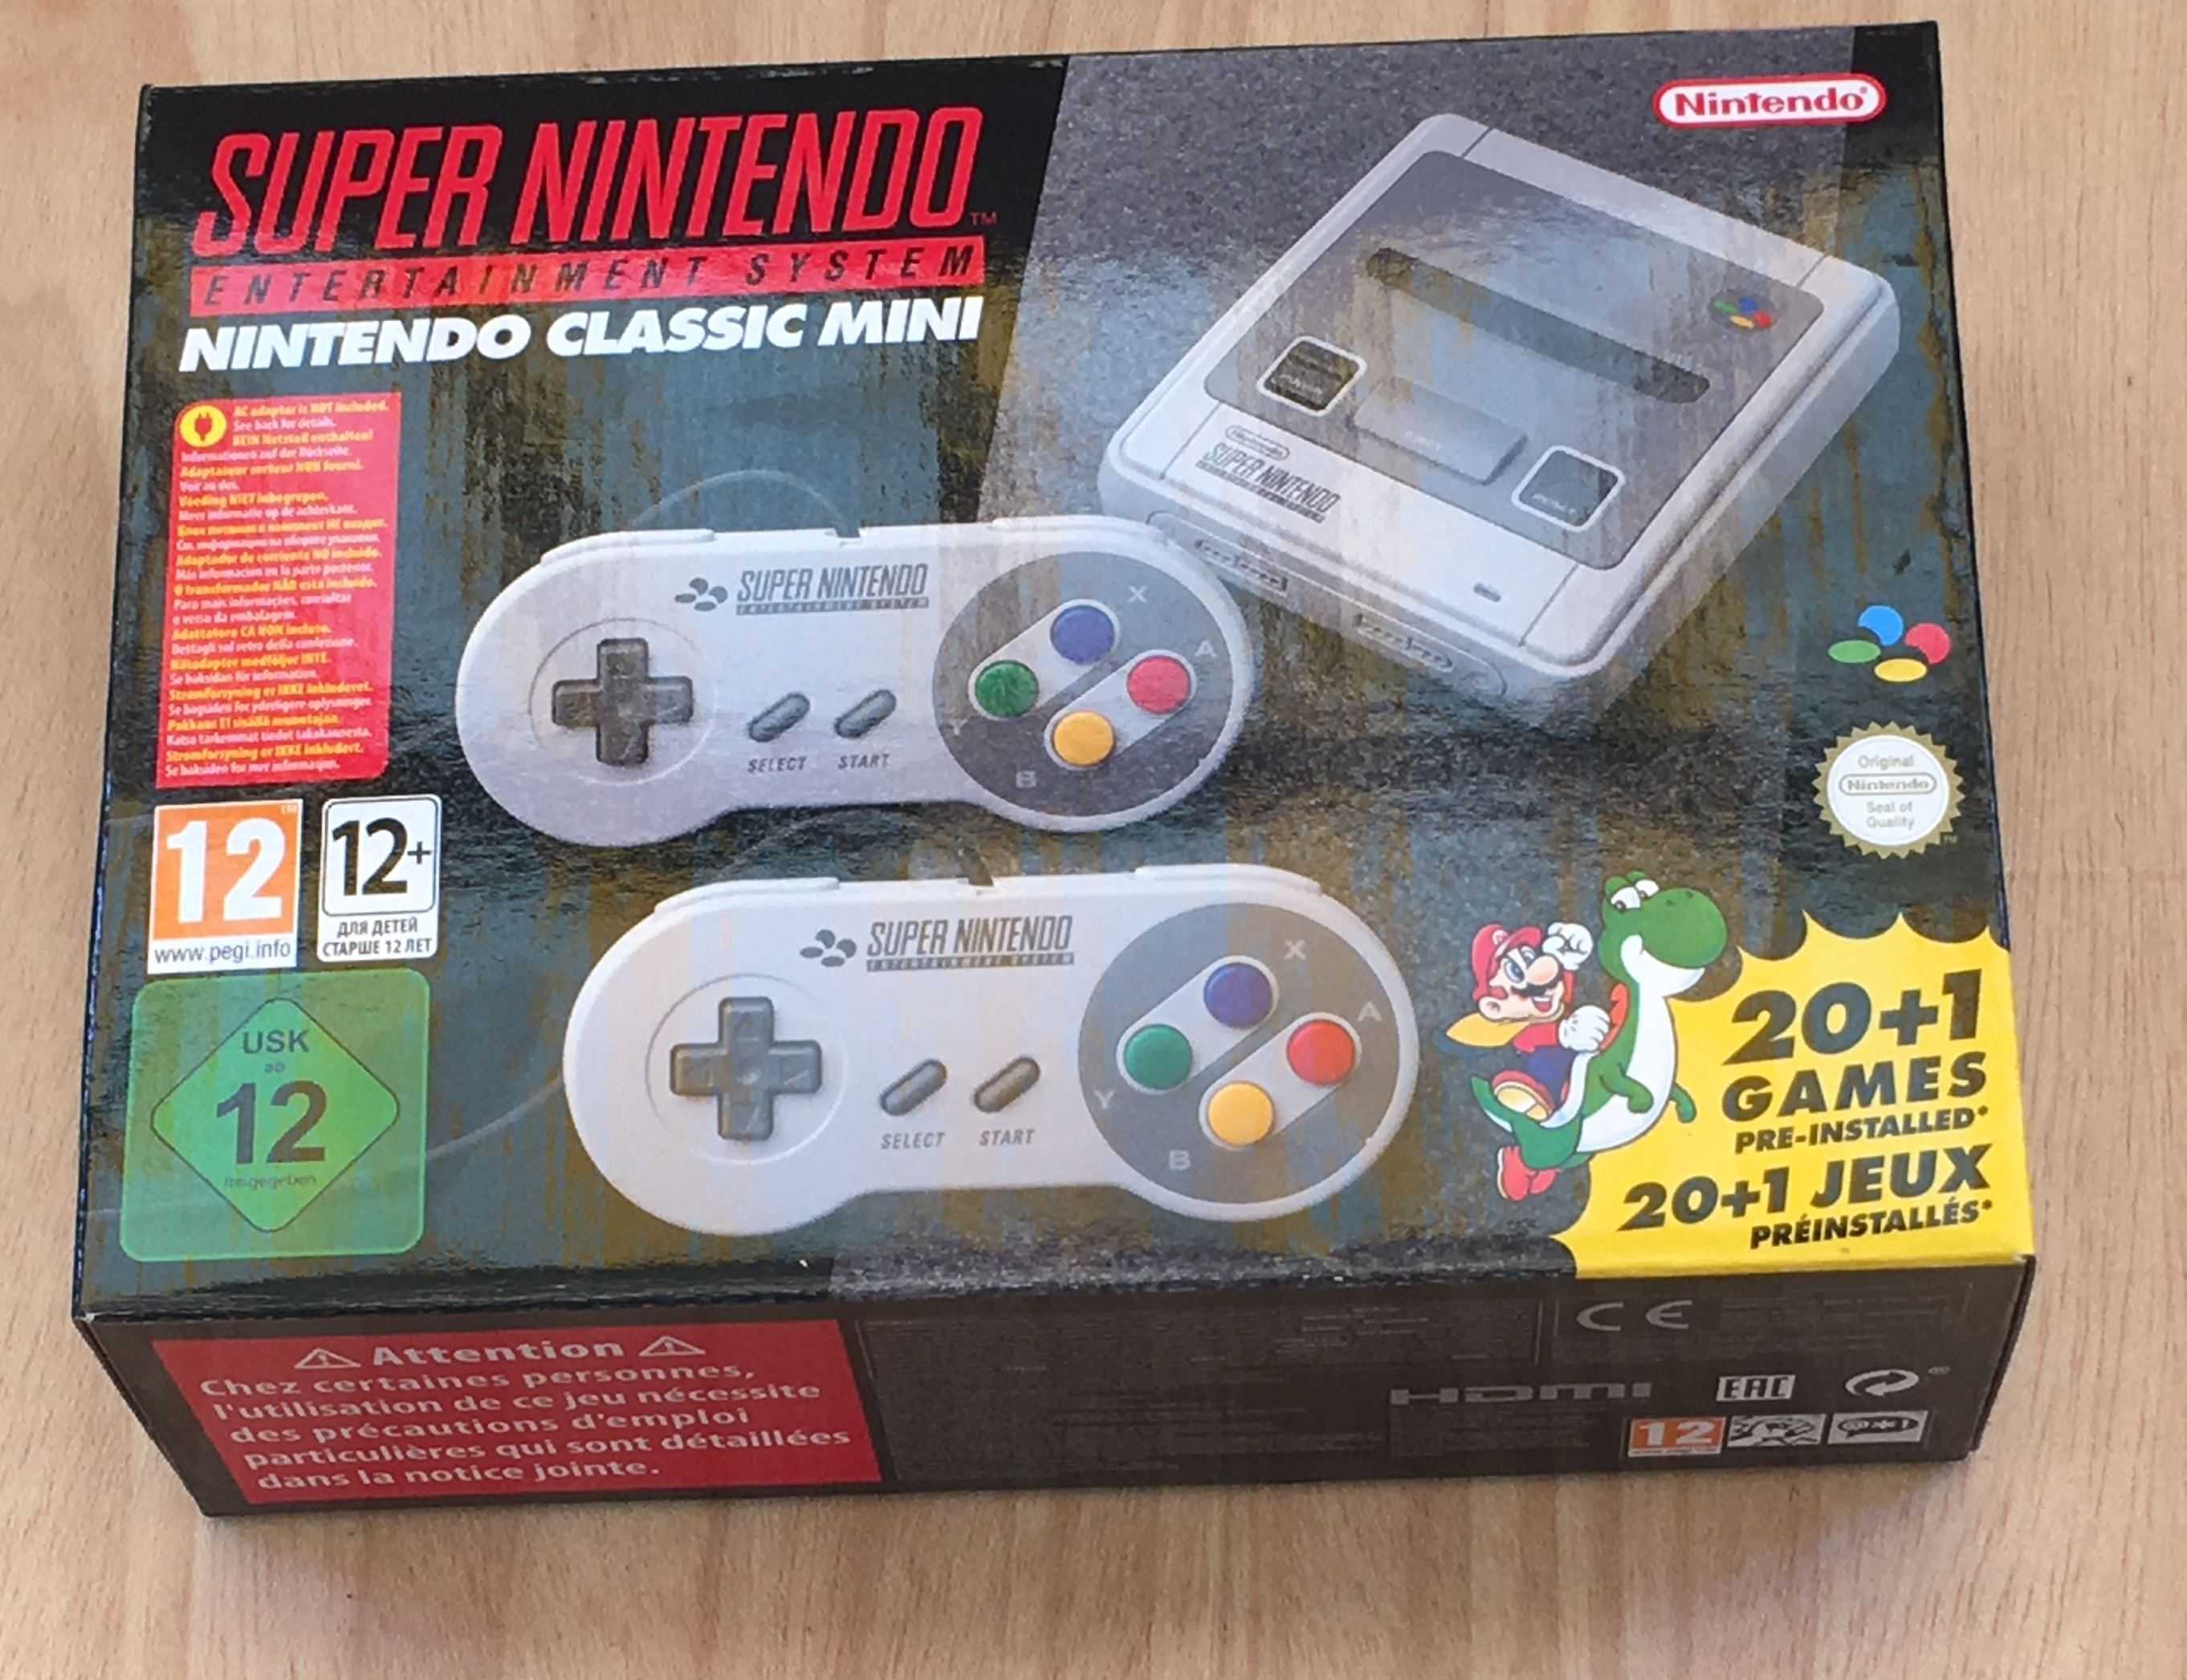 Super nintendo classic. Super Nintendo Classic Mini Snes. Nintendo Classic Mini Snes. Nintendo Classic Mini: super Nintendo. Nintendo super NES Classic Mini.